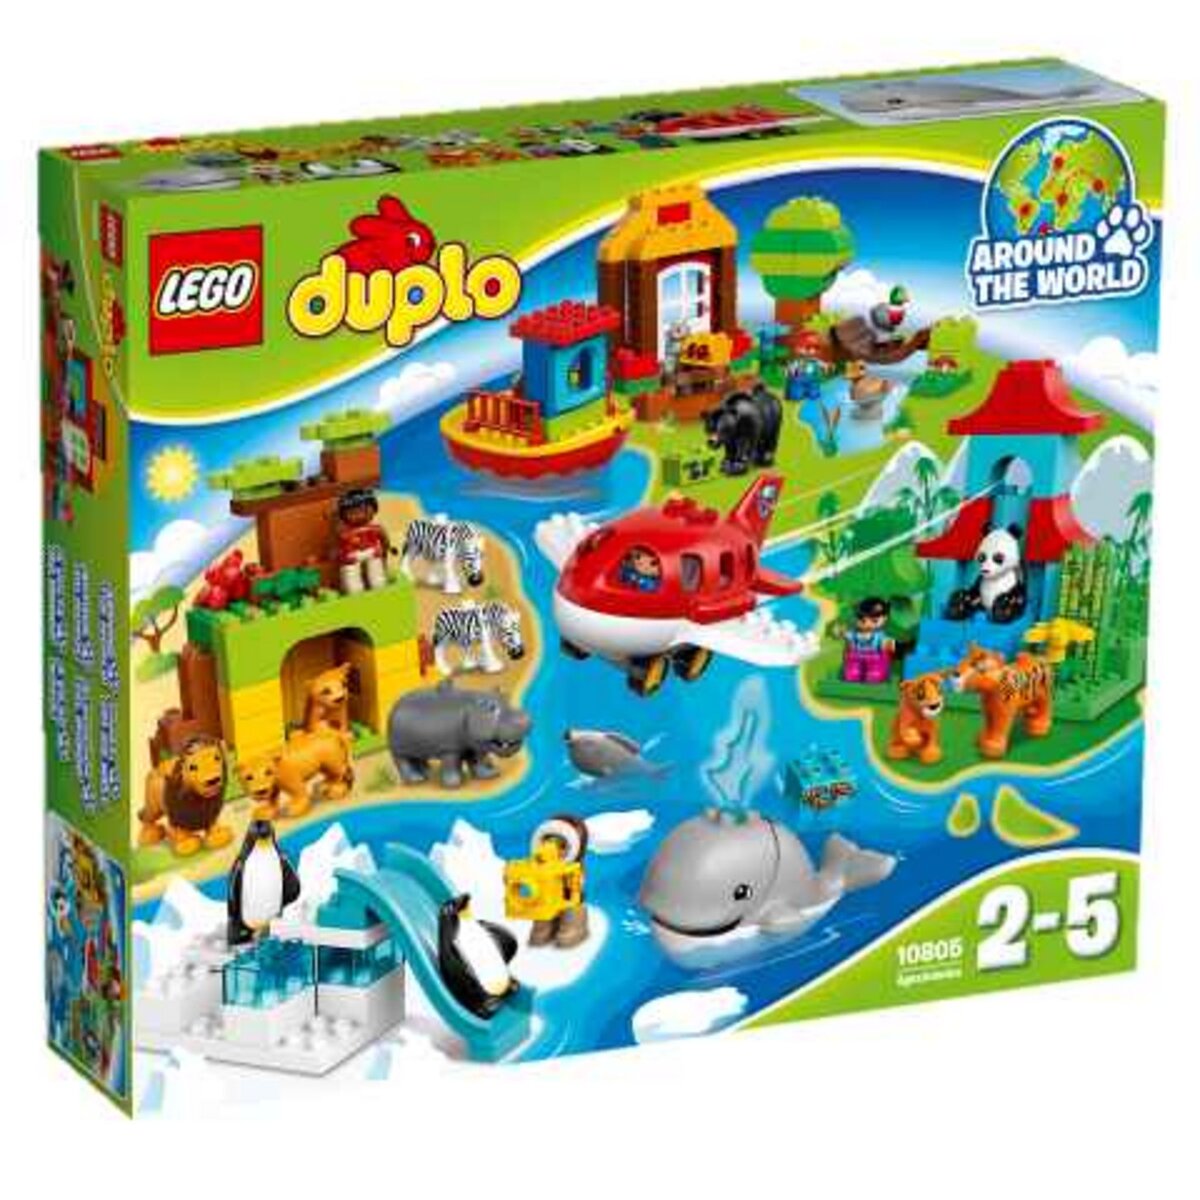 LEGO 10805 Duplo Town Le tour du monde